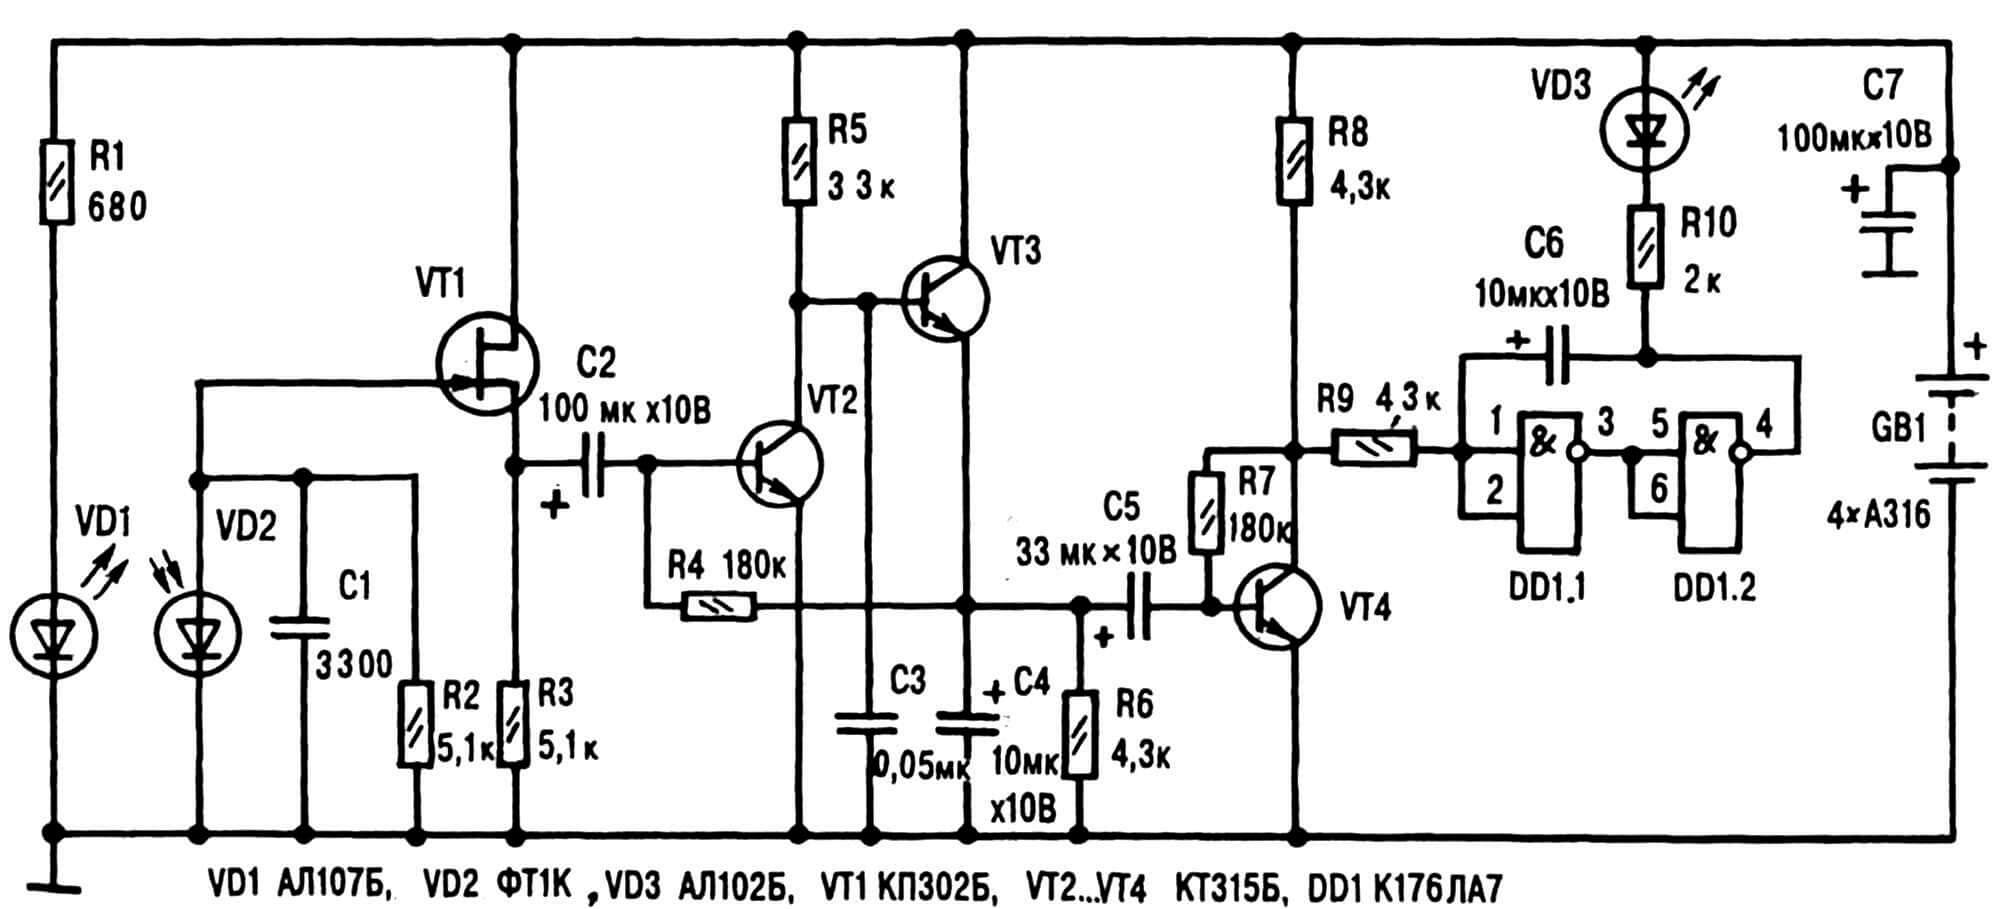 Рис. 4. Принципиальная электрическая схема устройства, позволяющего контролировать пульс «на просвет» в ИК-лучах.